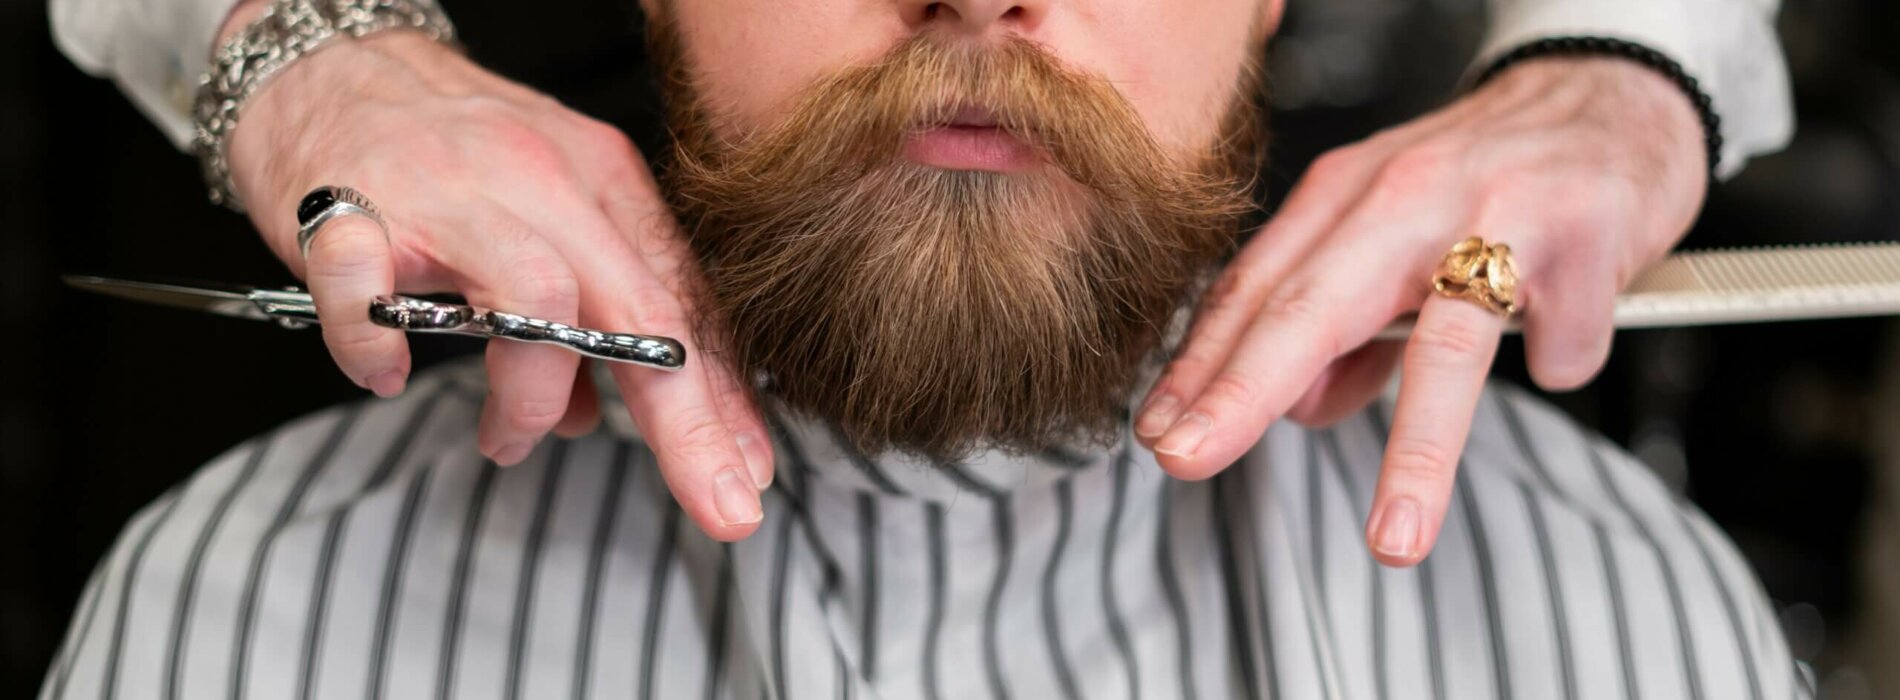 Jak dbać o brodę w domu